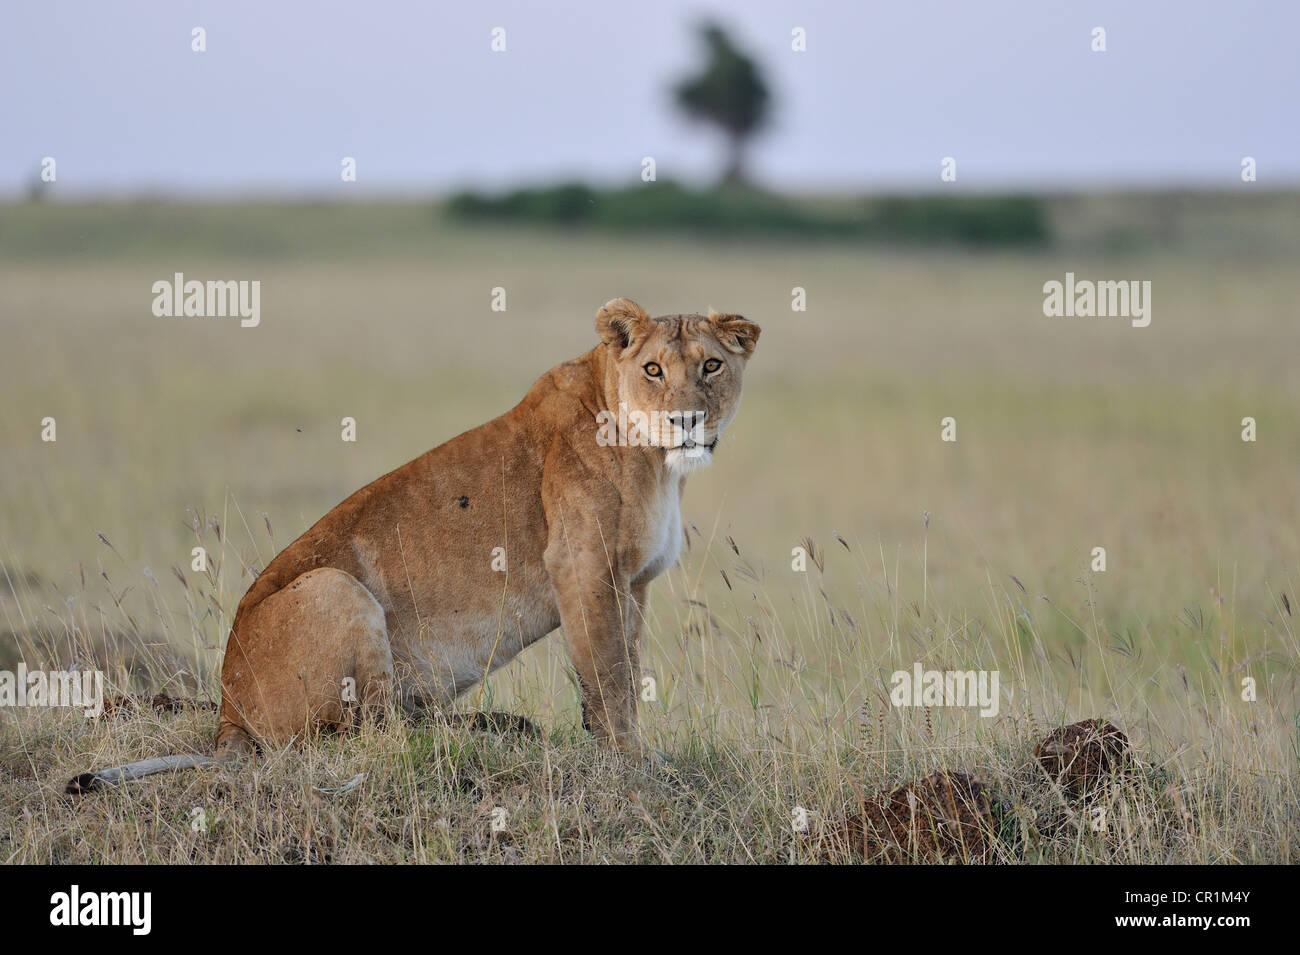 East African Lion - Massai-Löwe (Panthera Leo Nubica) Weibchen sitzen in der Savanne Ostafrikas Masai Mara - Kenia- Stockfoto